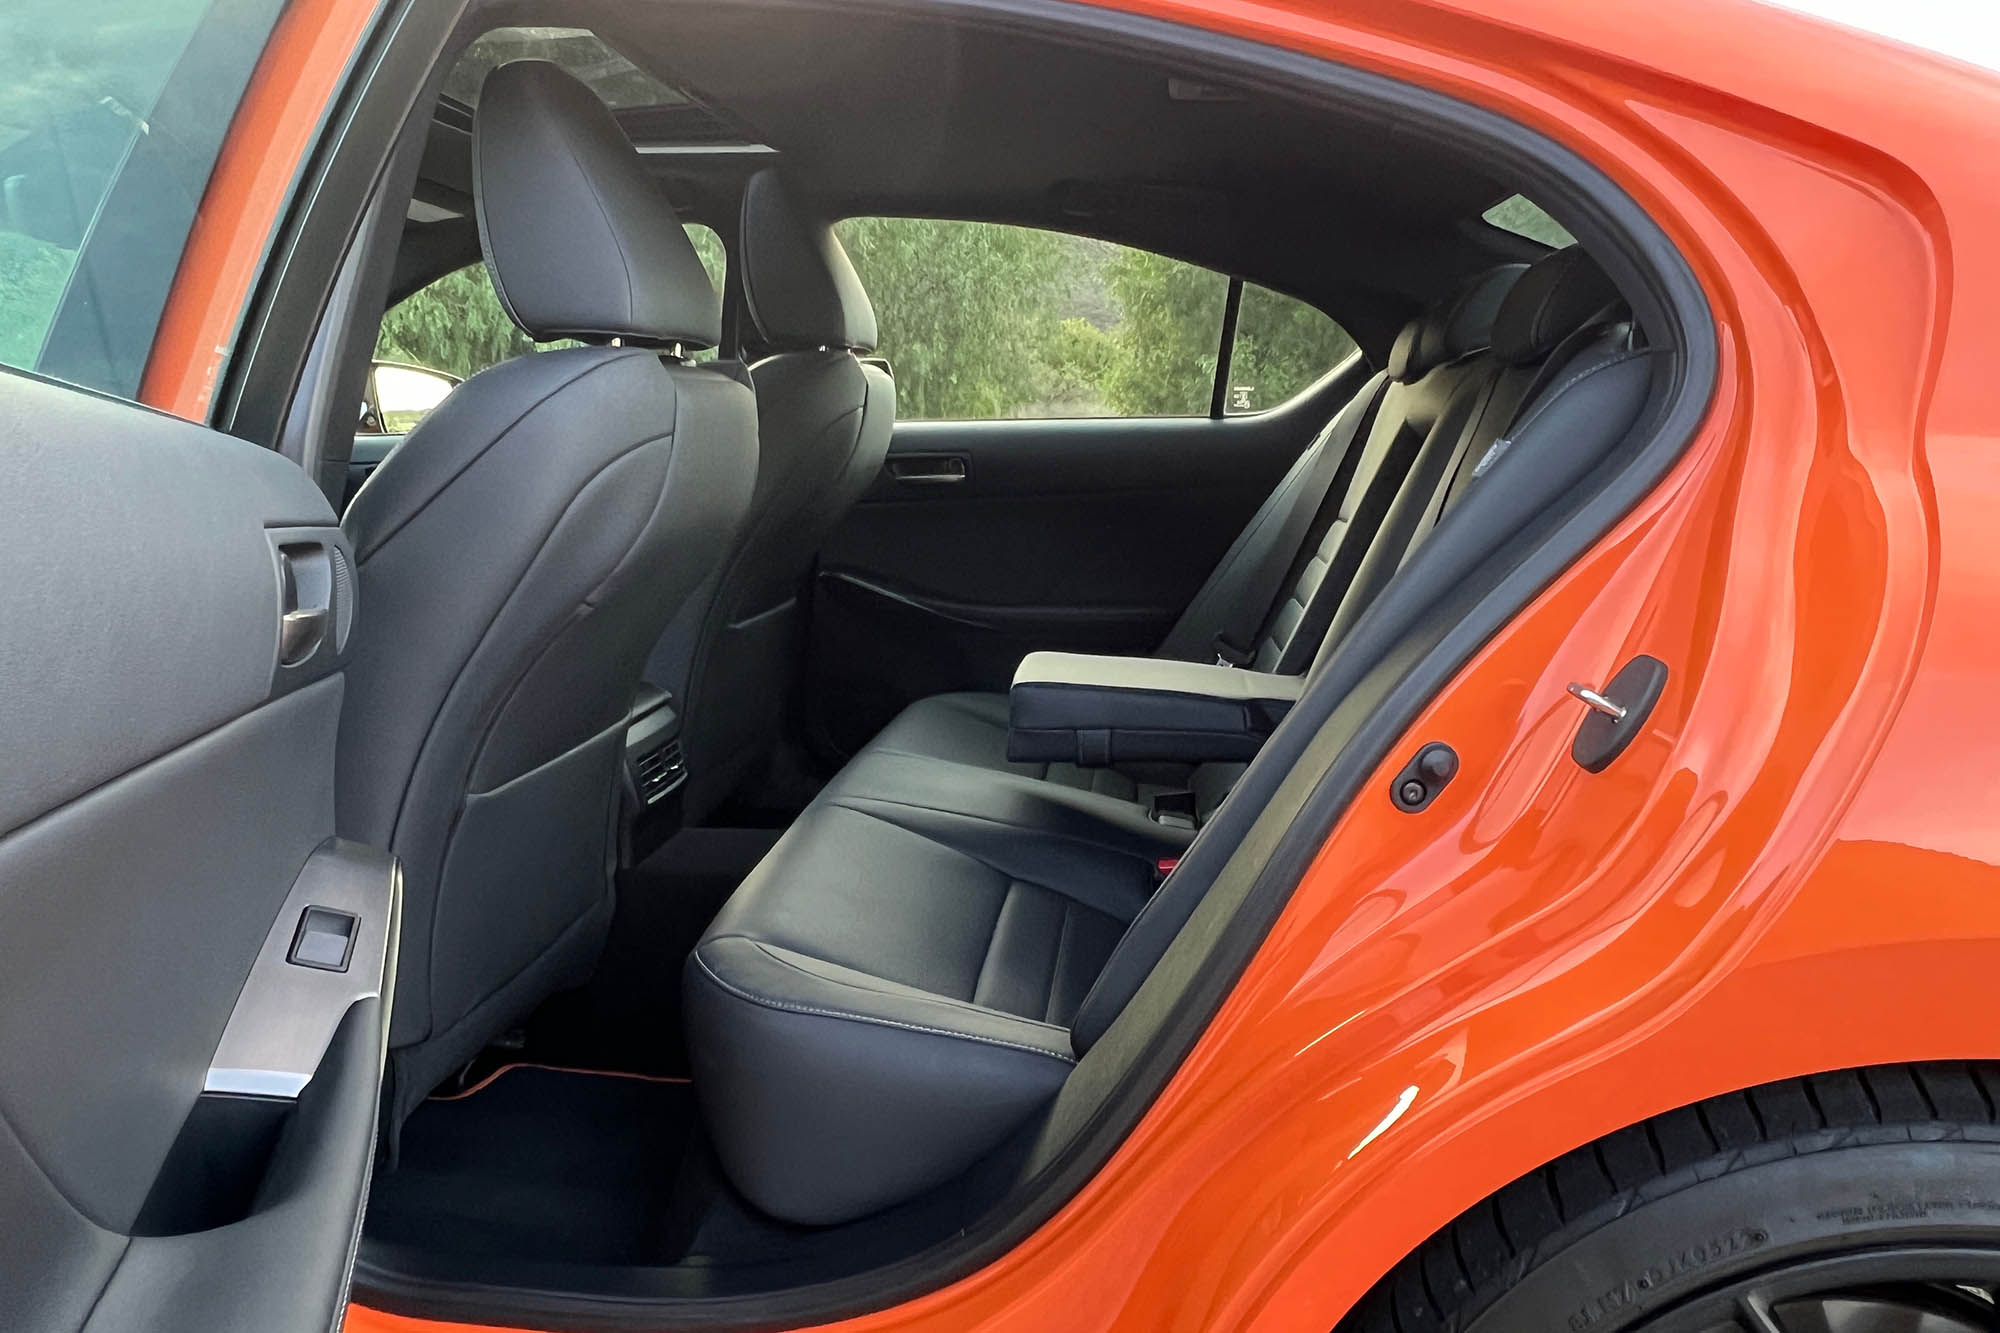 The rear seats of an orange 2023 Lexus IS 500